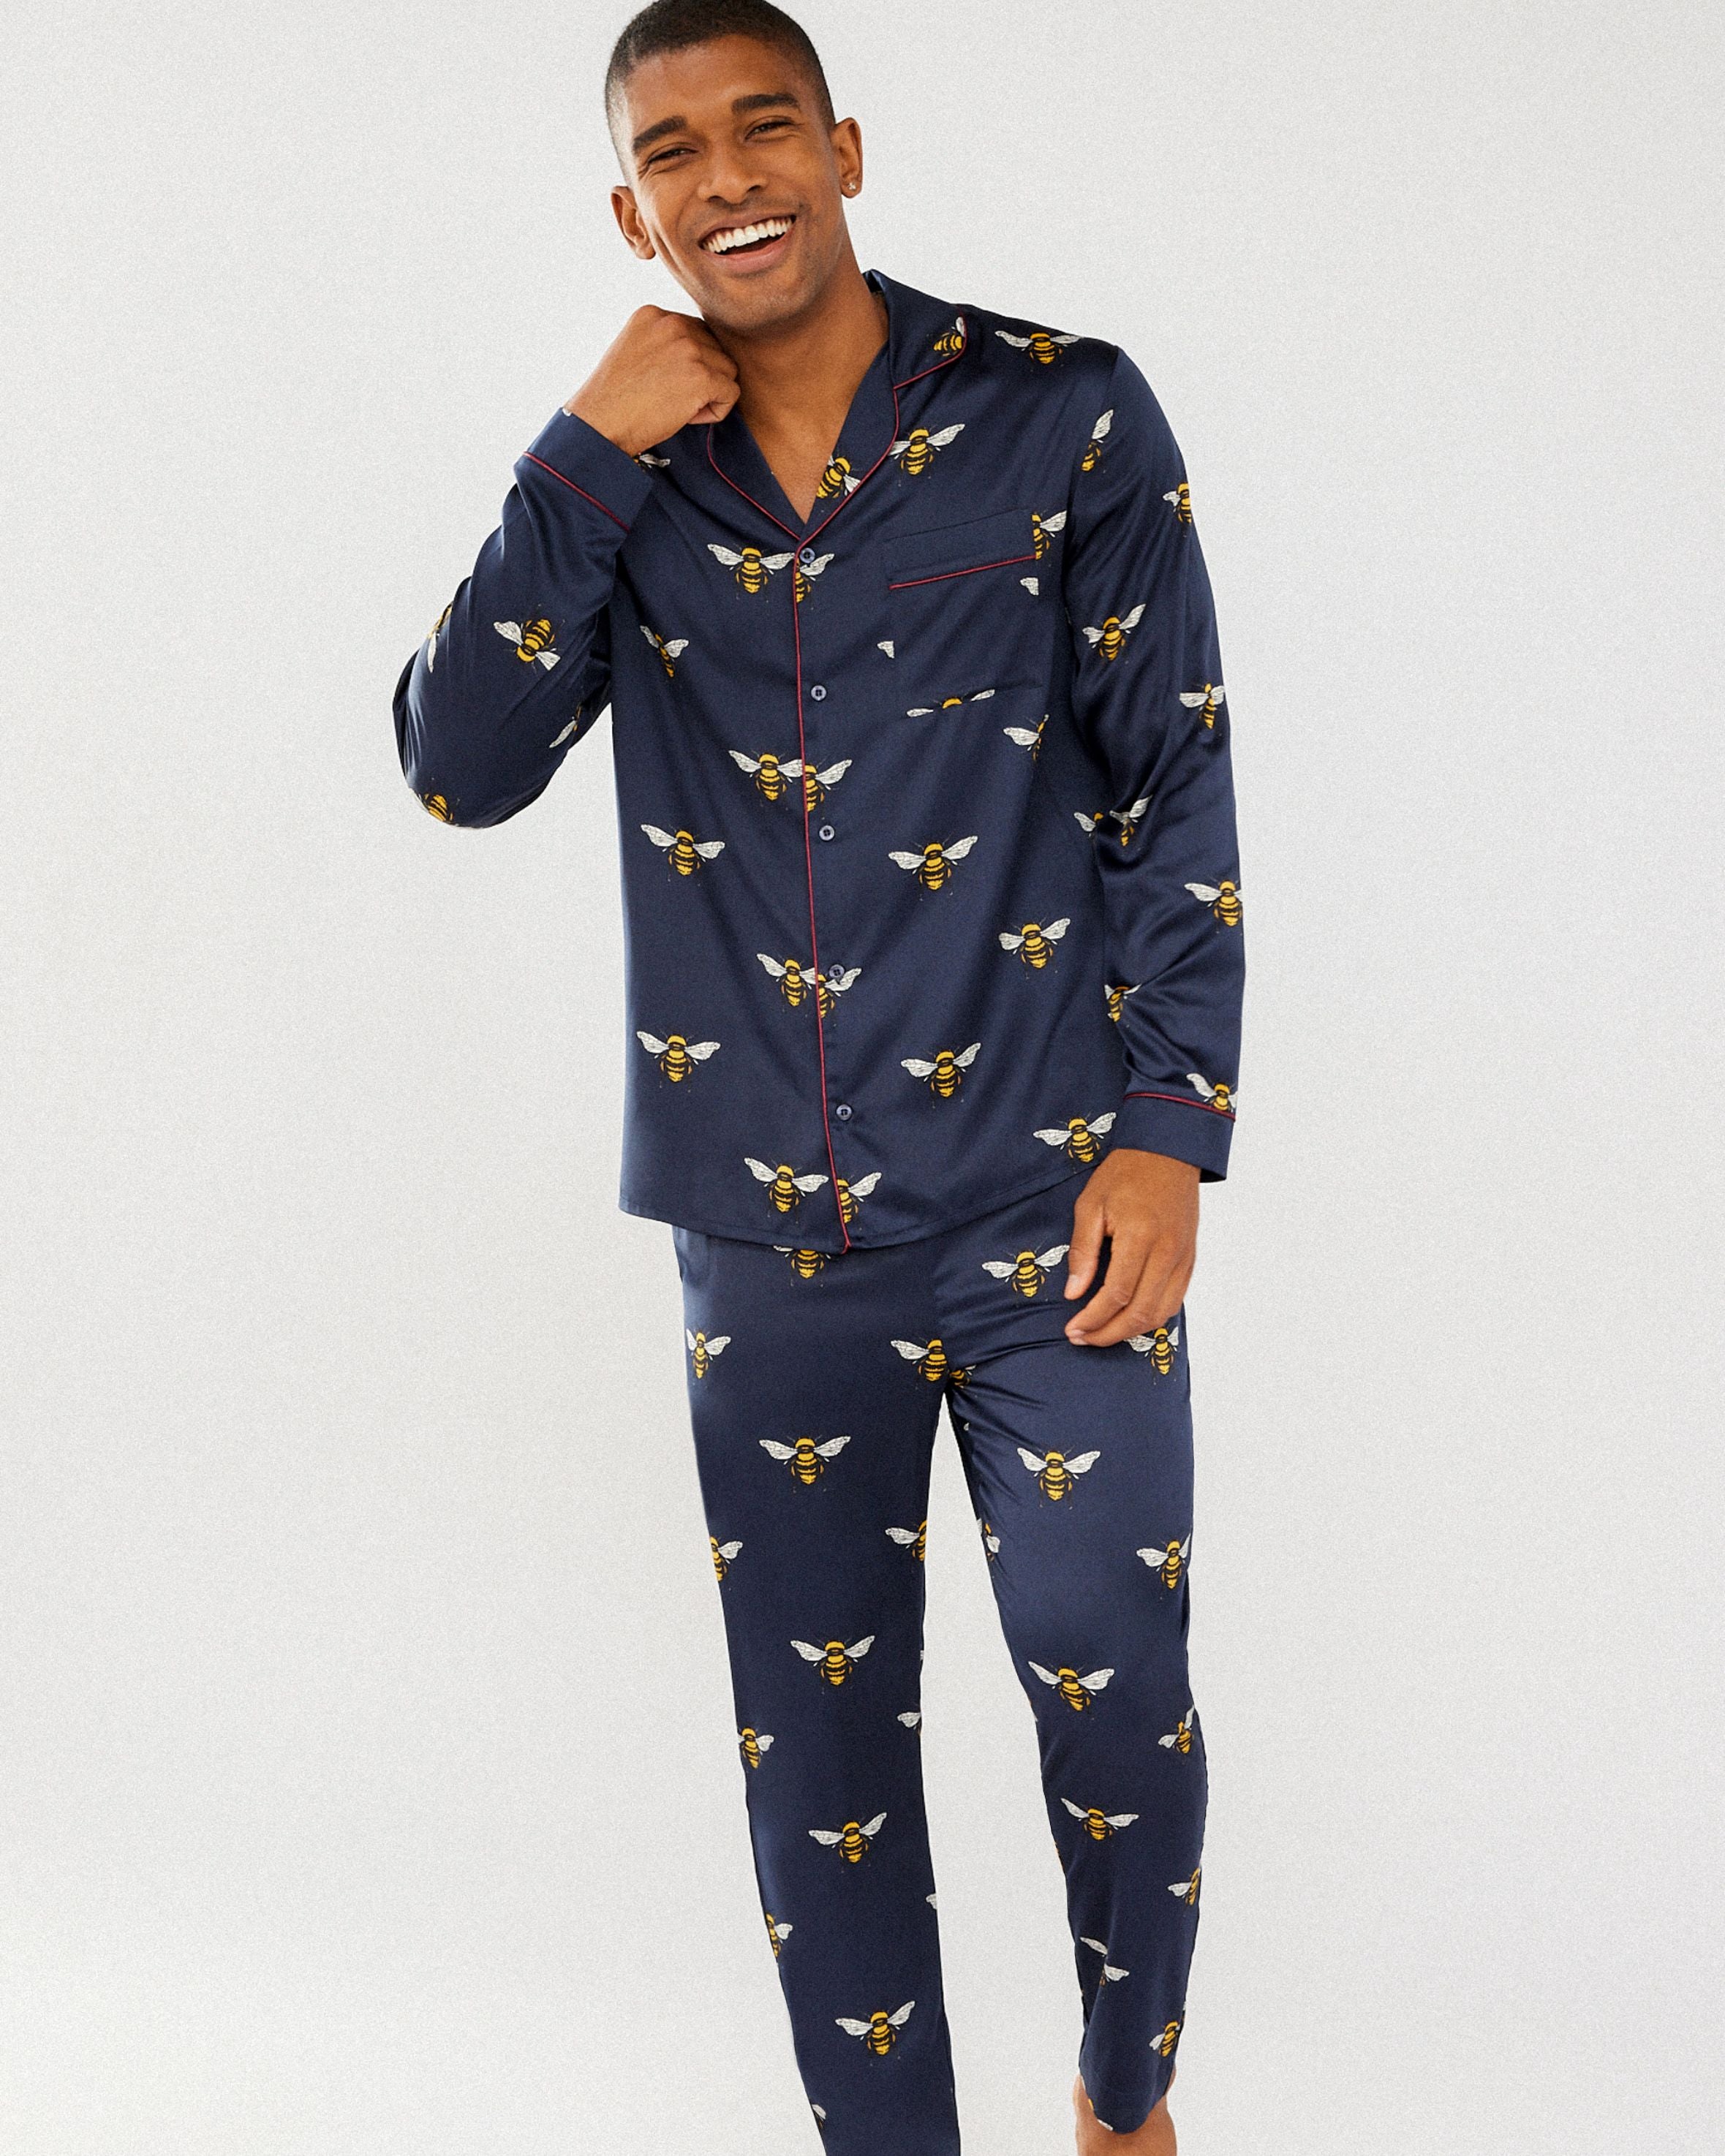 Men's Satin Navy Bee Print Long Pyjama Set – Chelsea Peers NYC